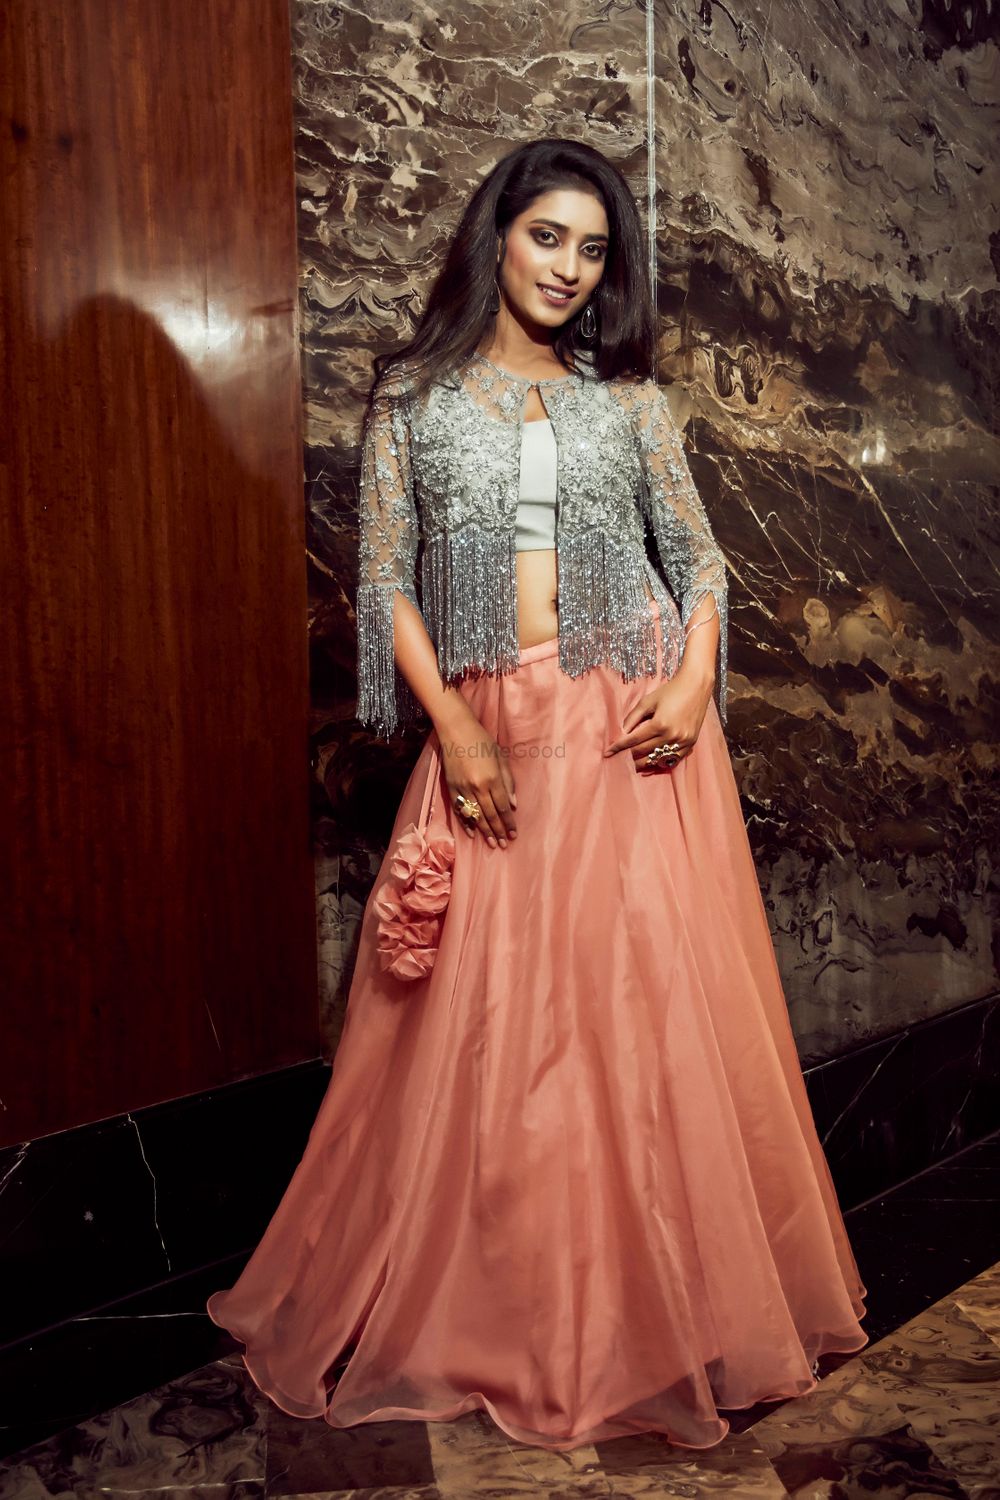 Photo From The wedding look - By Neha Chavan Design Studio